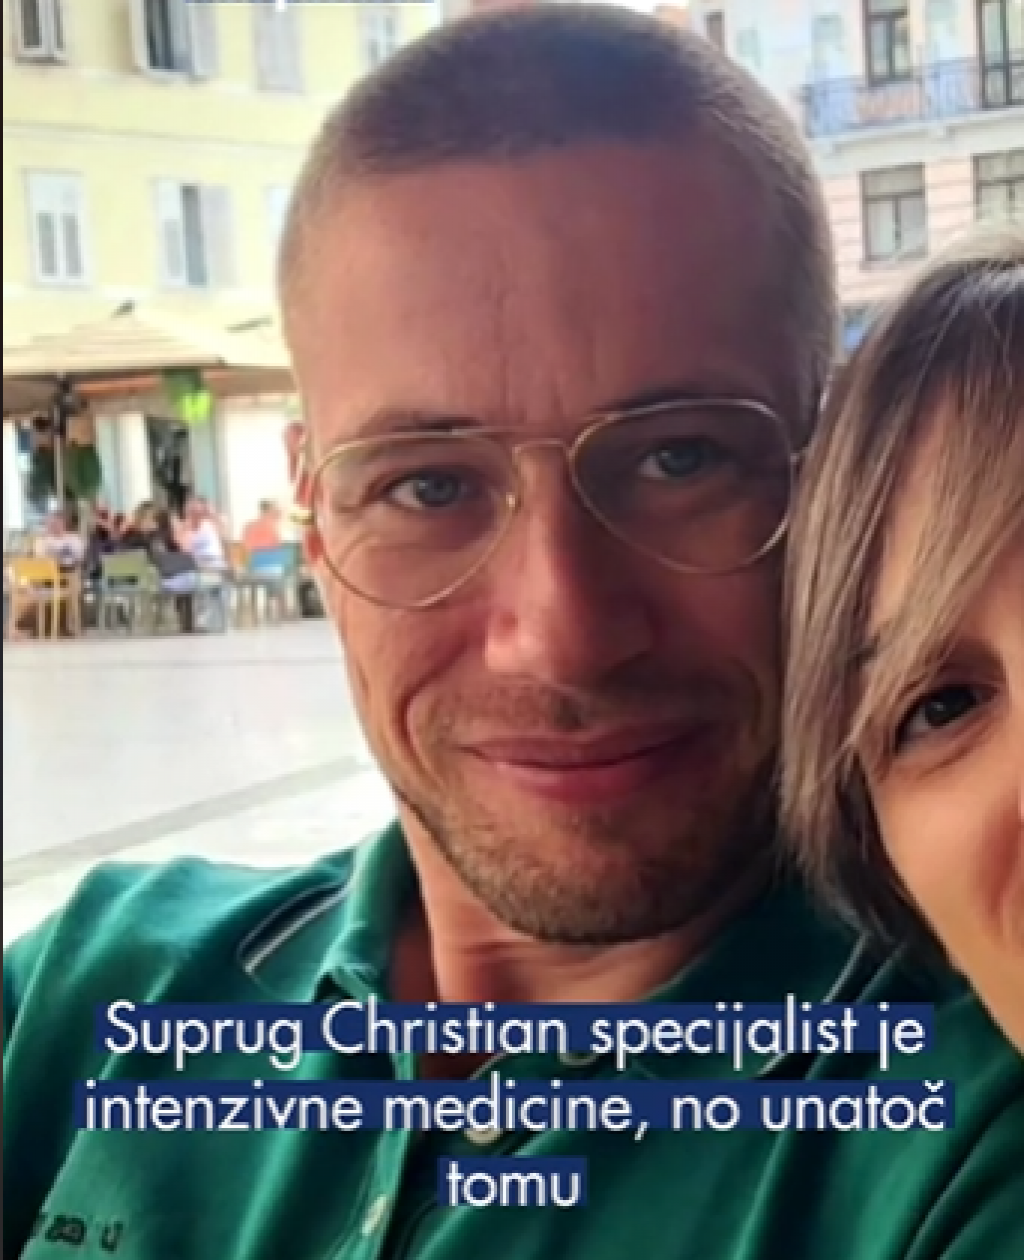 &lt;p&gt;Suprug Christian specijalist je intenzivne medicine, ali u Hrvatskoj za sada ne može raditi&lt;/p&gt;